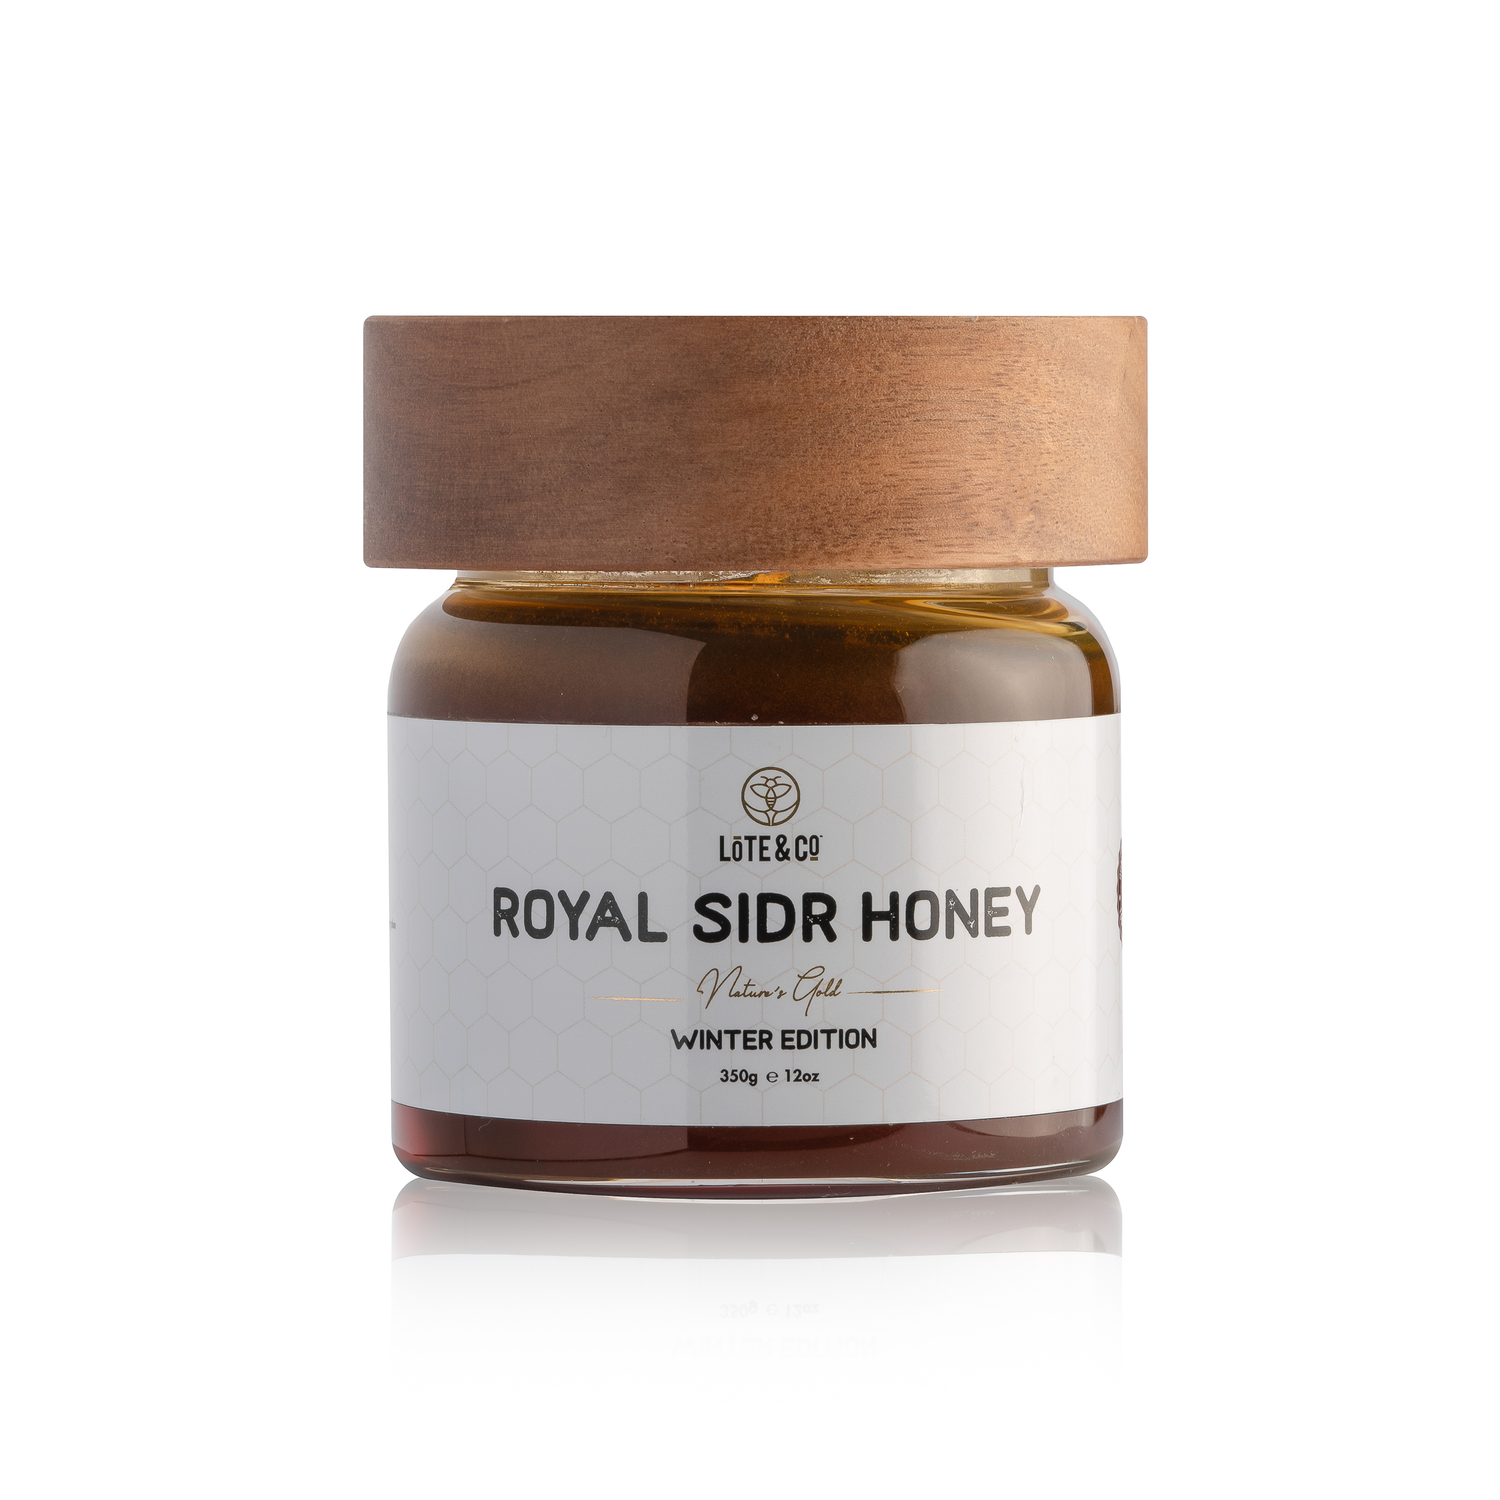 Royal Yemeni Sidr Honey (350g)